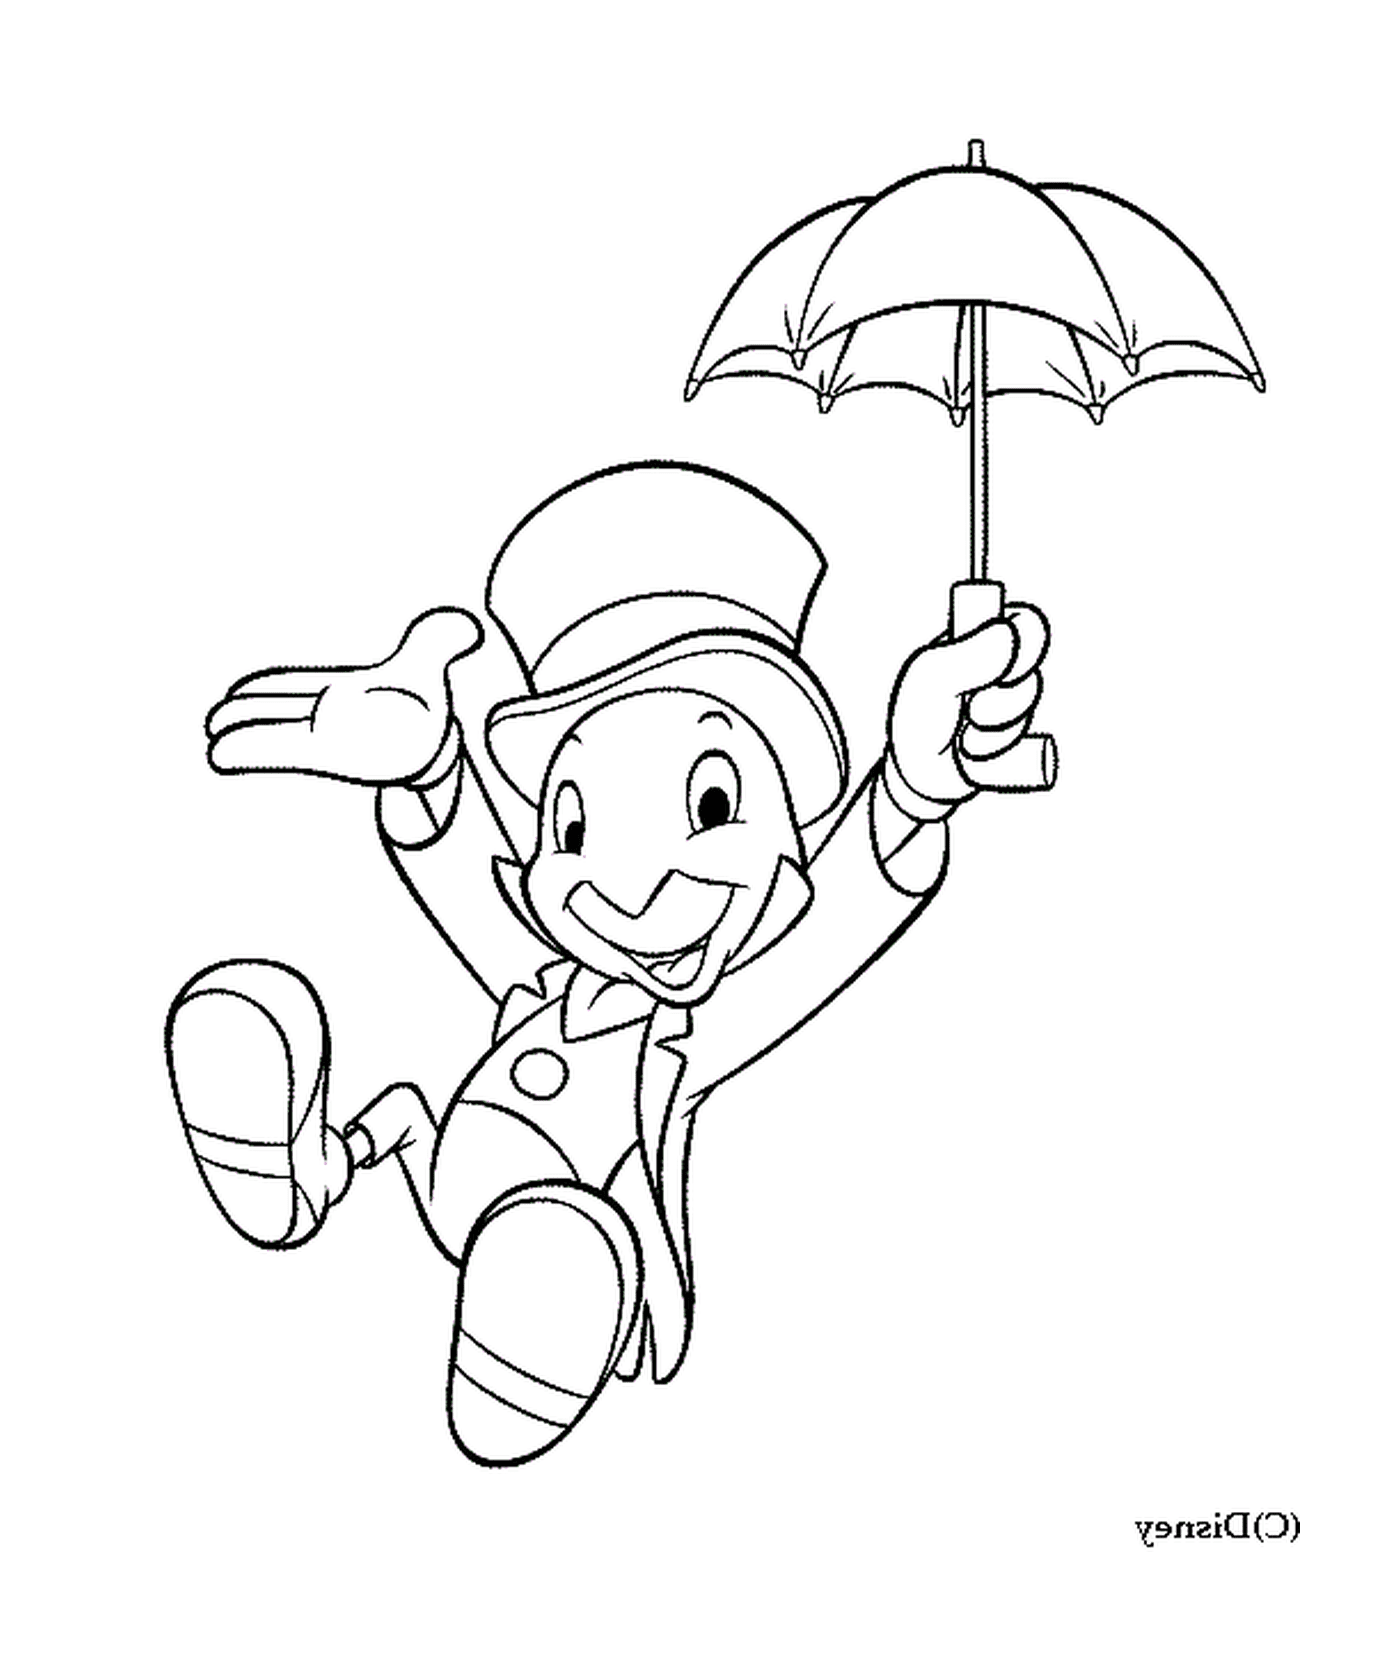 Jiminy Cricket avec son parapluie